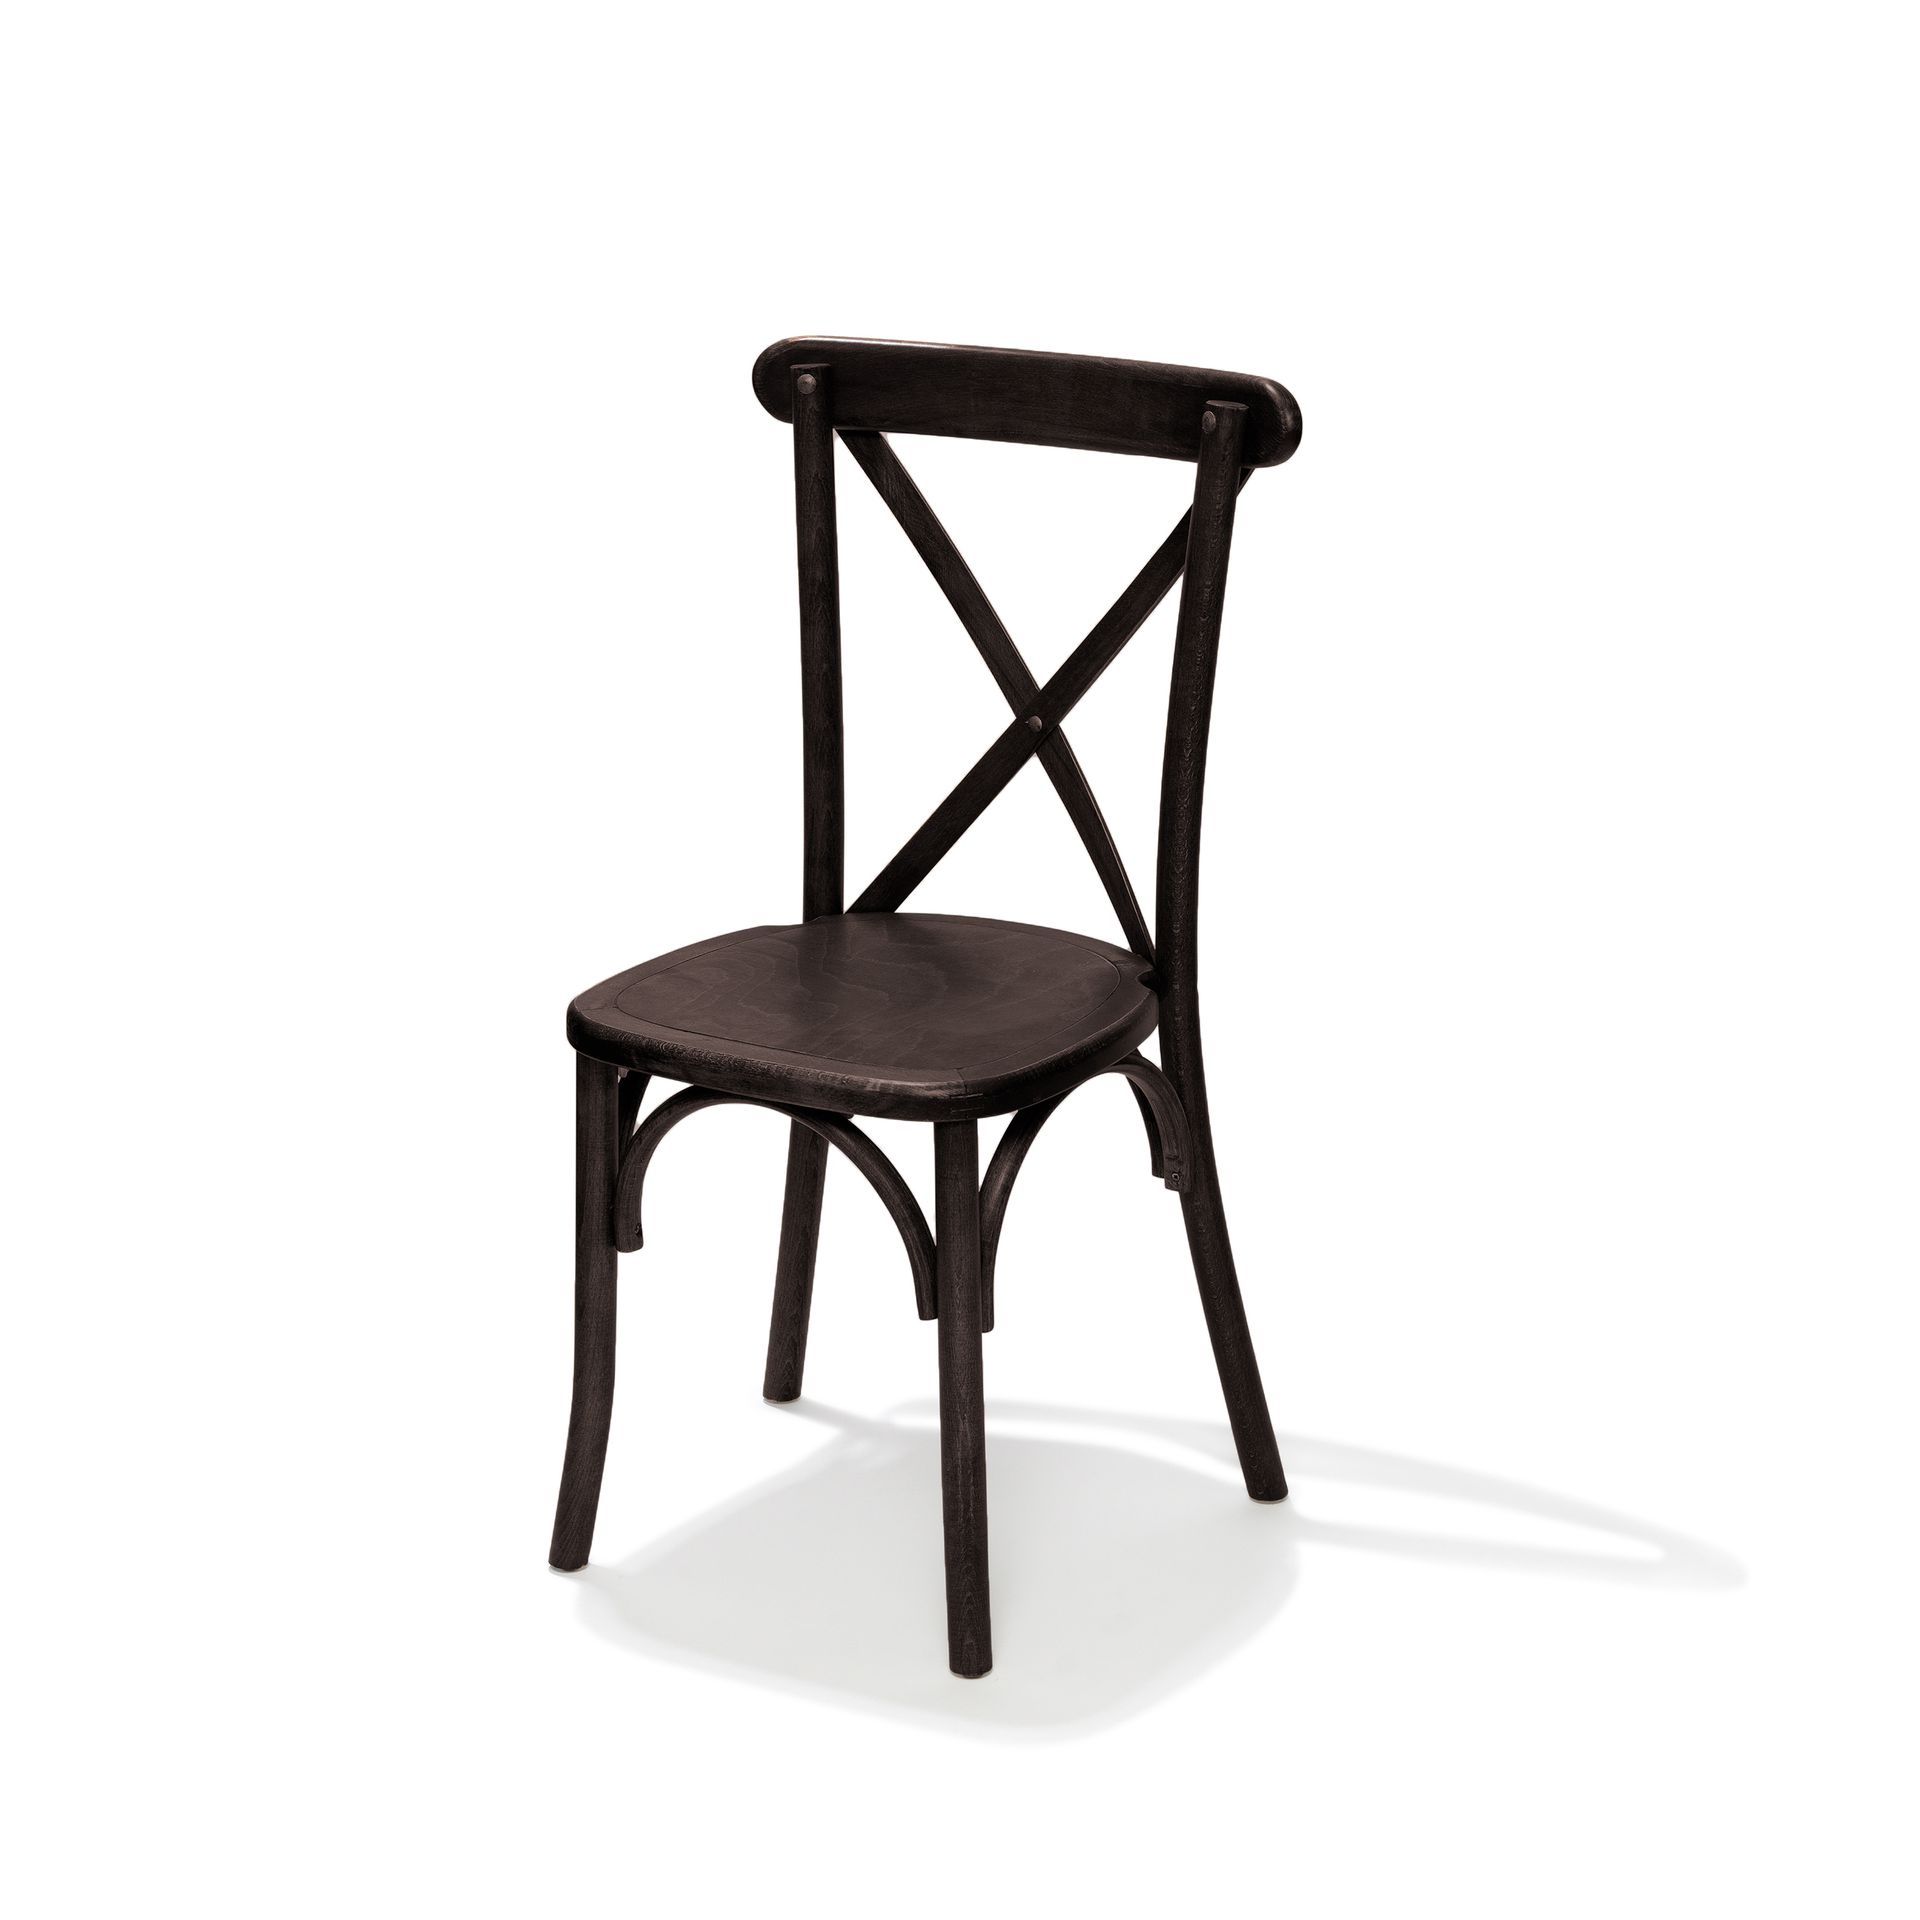 Crossback chaise empilable en bois massif, Marron foncé, 48x47x88cm (BxTxH), 50100